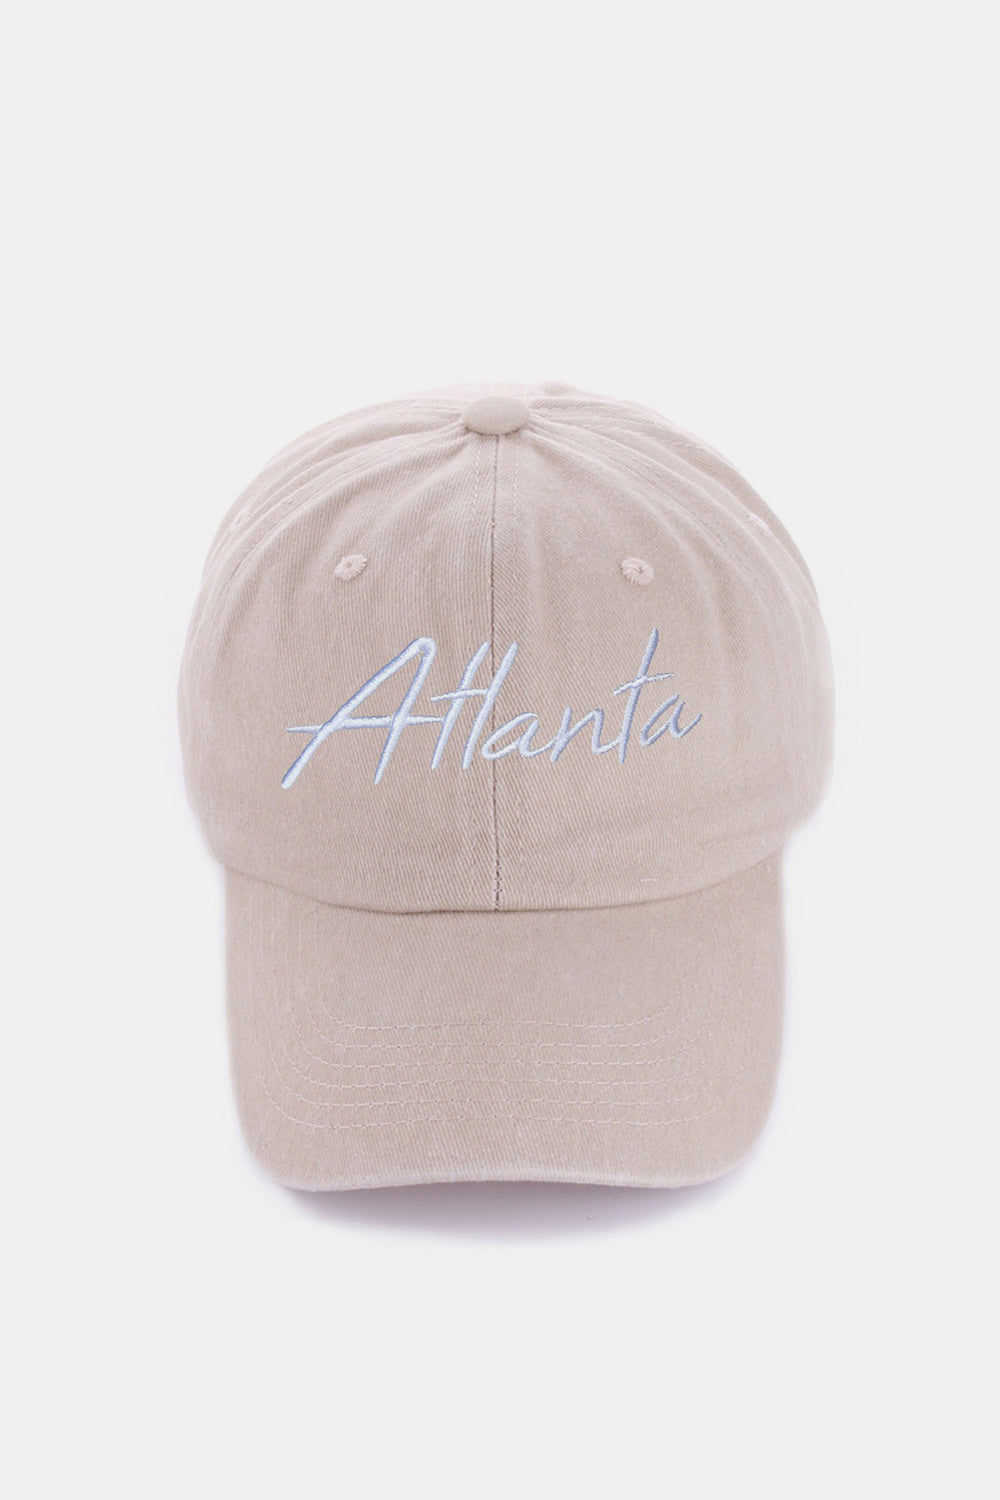 Zenana Washed ATLANTA Embroidered Baseball Cap Sunset and Swim Atlanta Ash Mocha One Size 